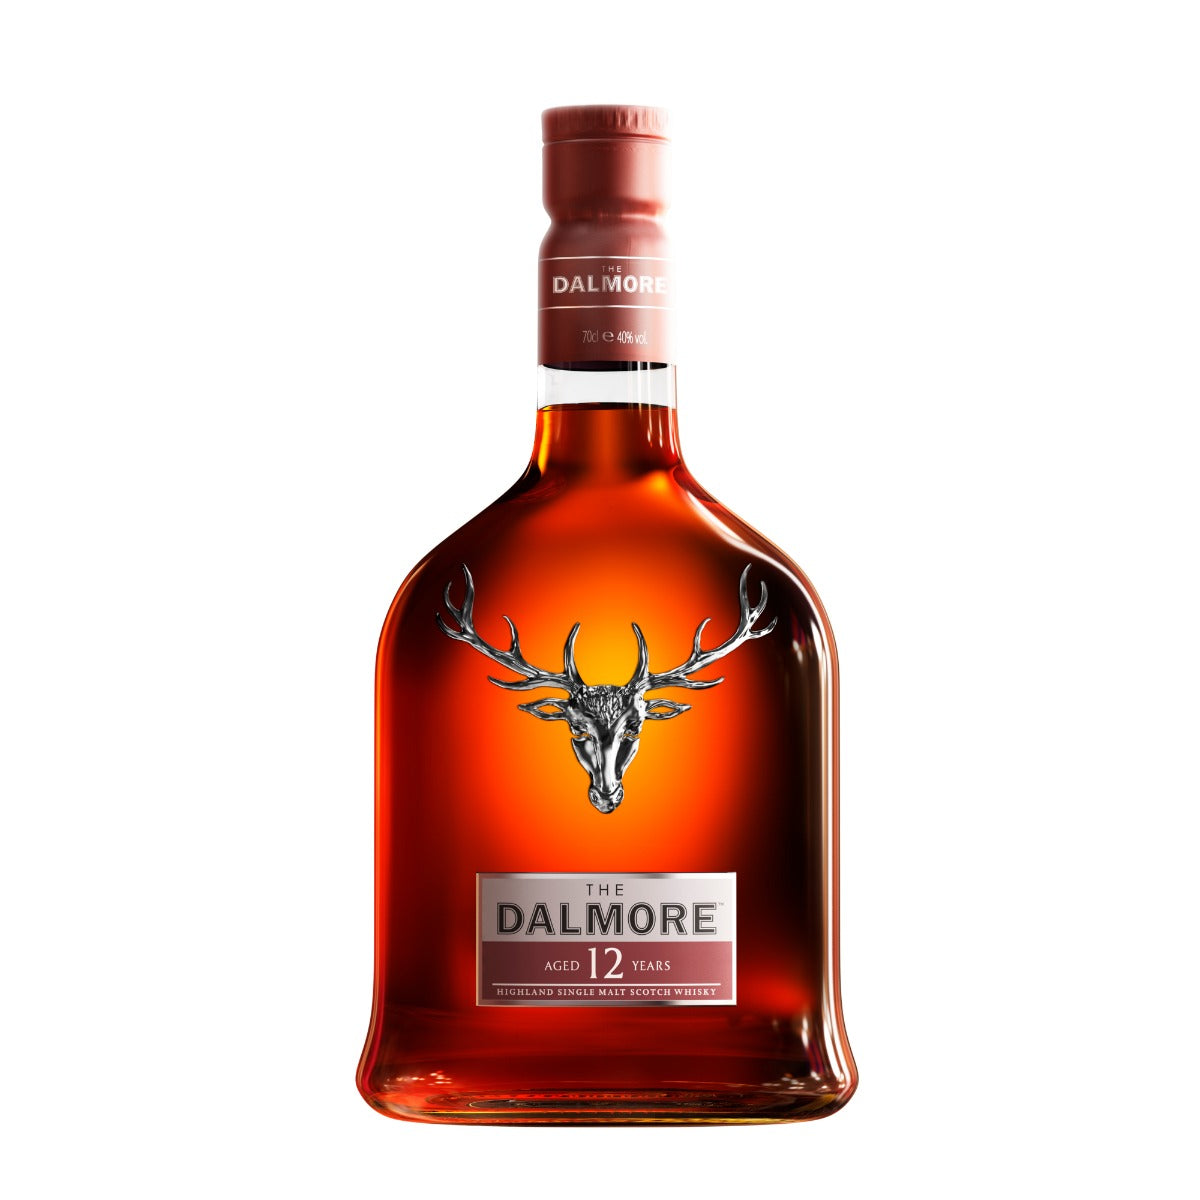 DALMORE SCOTCH SINGLE MALT 12YR 750ML - Remedy Liquor